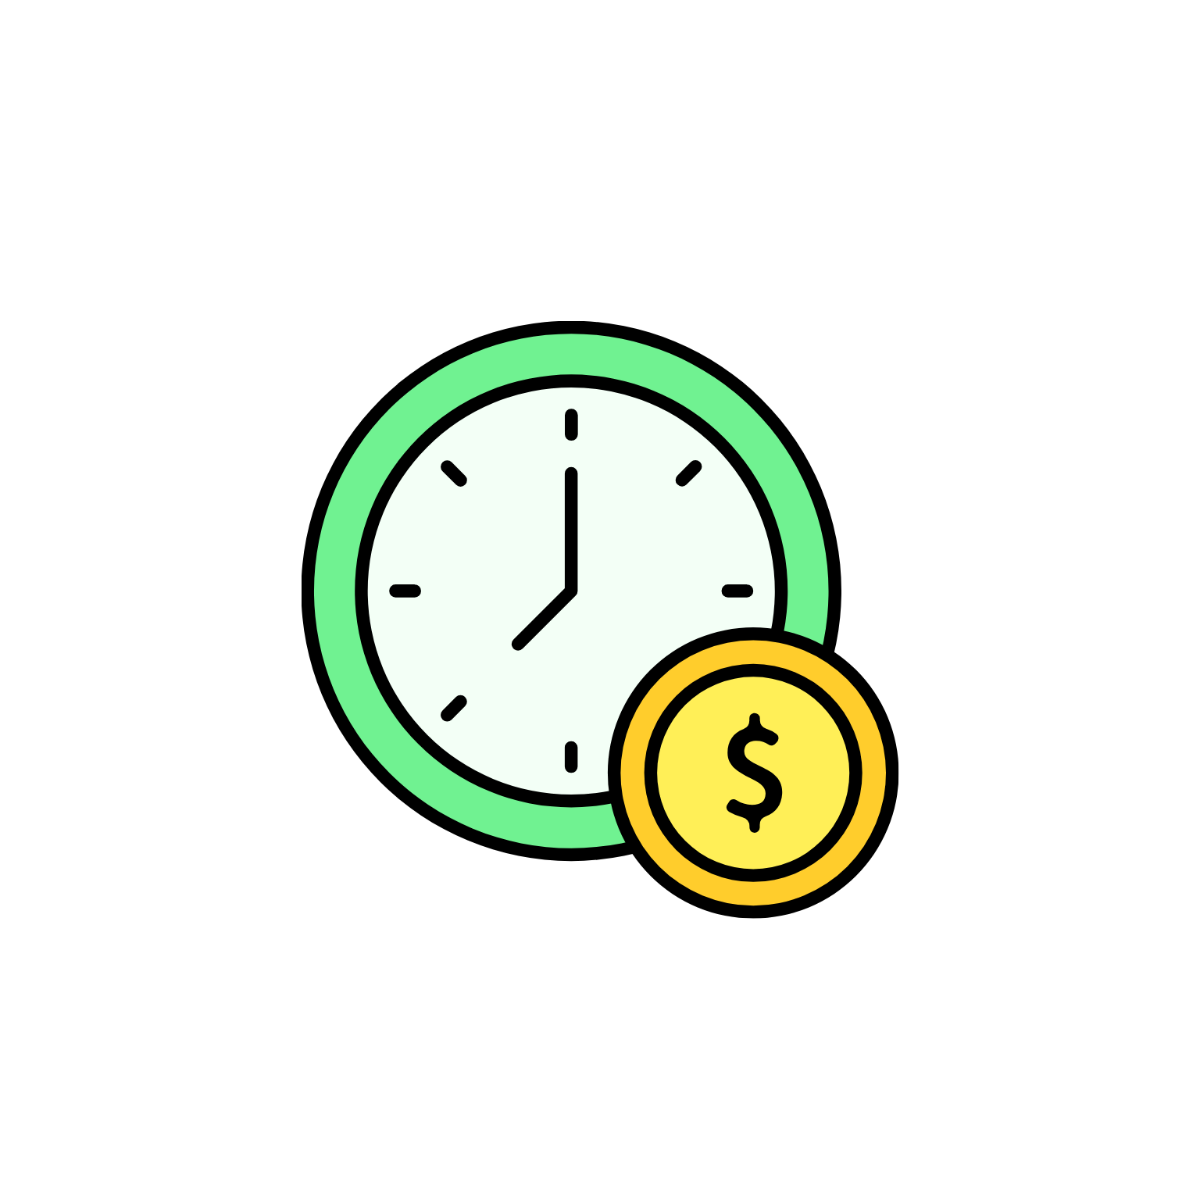 Money Time Icon